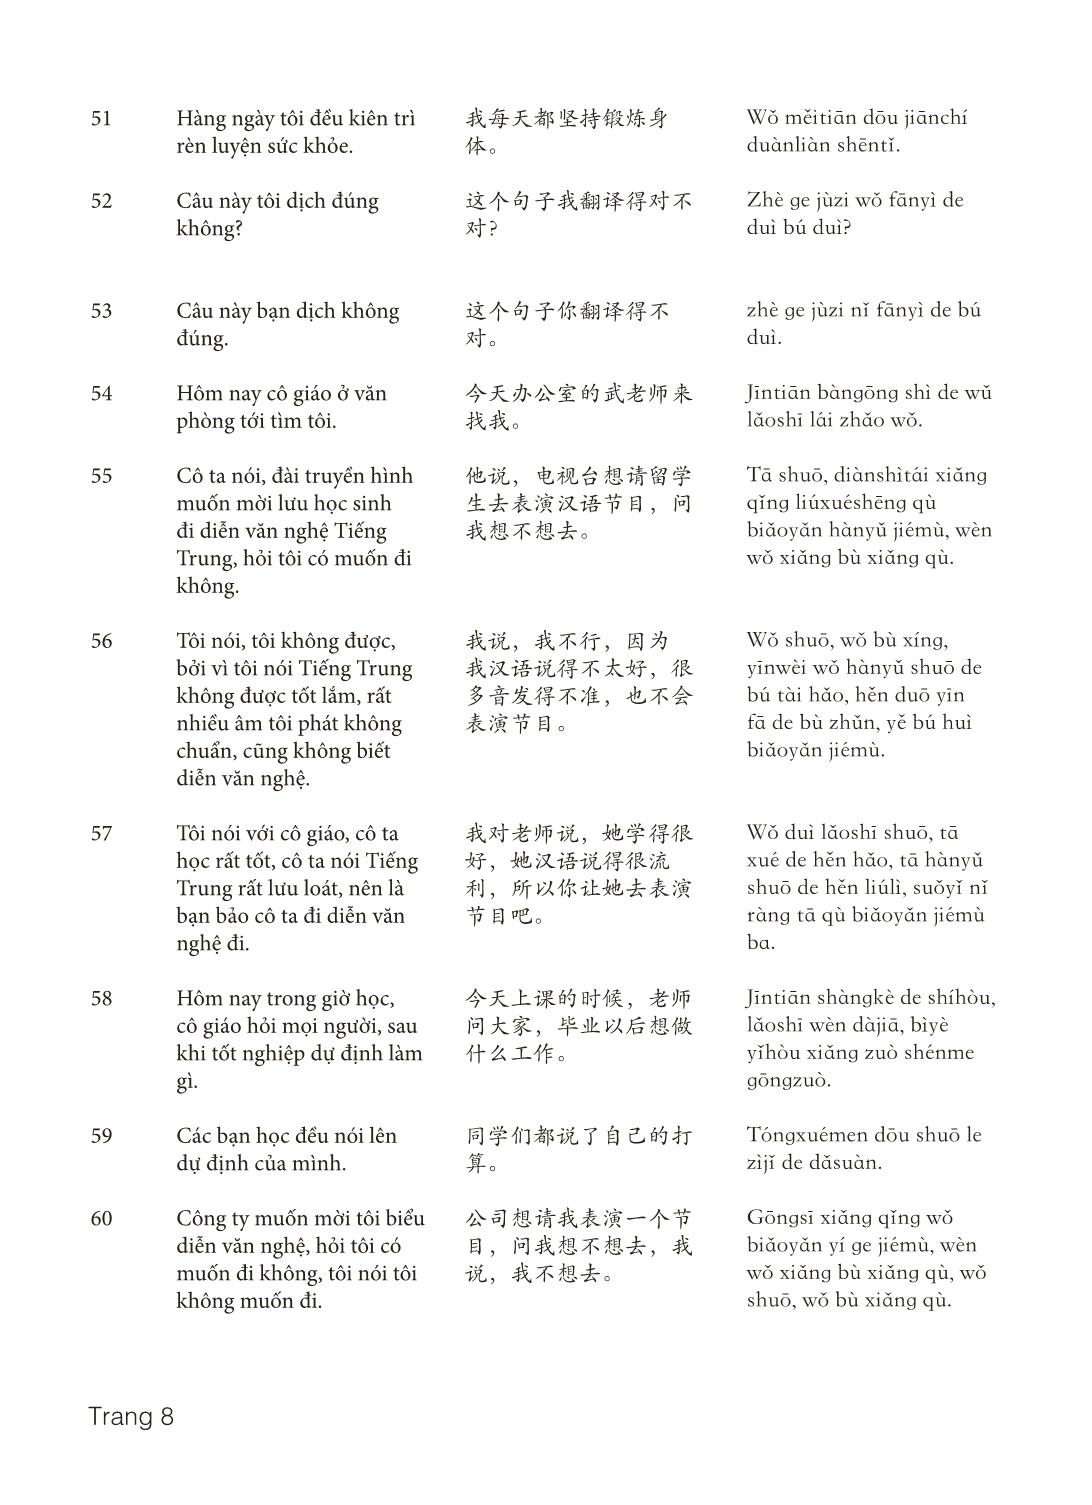 3000 Câu đàm thoại tiếng Hoa - Phần 8 trang 8